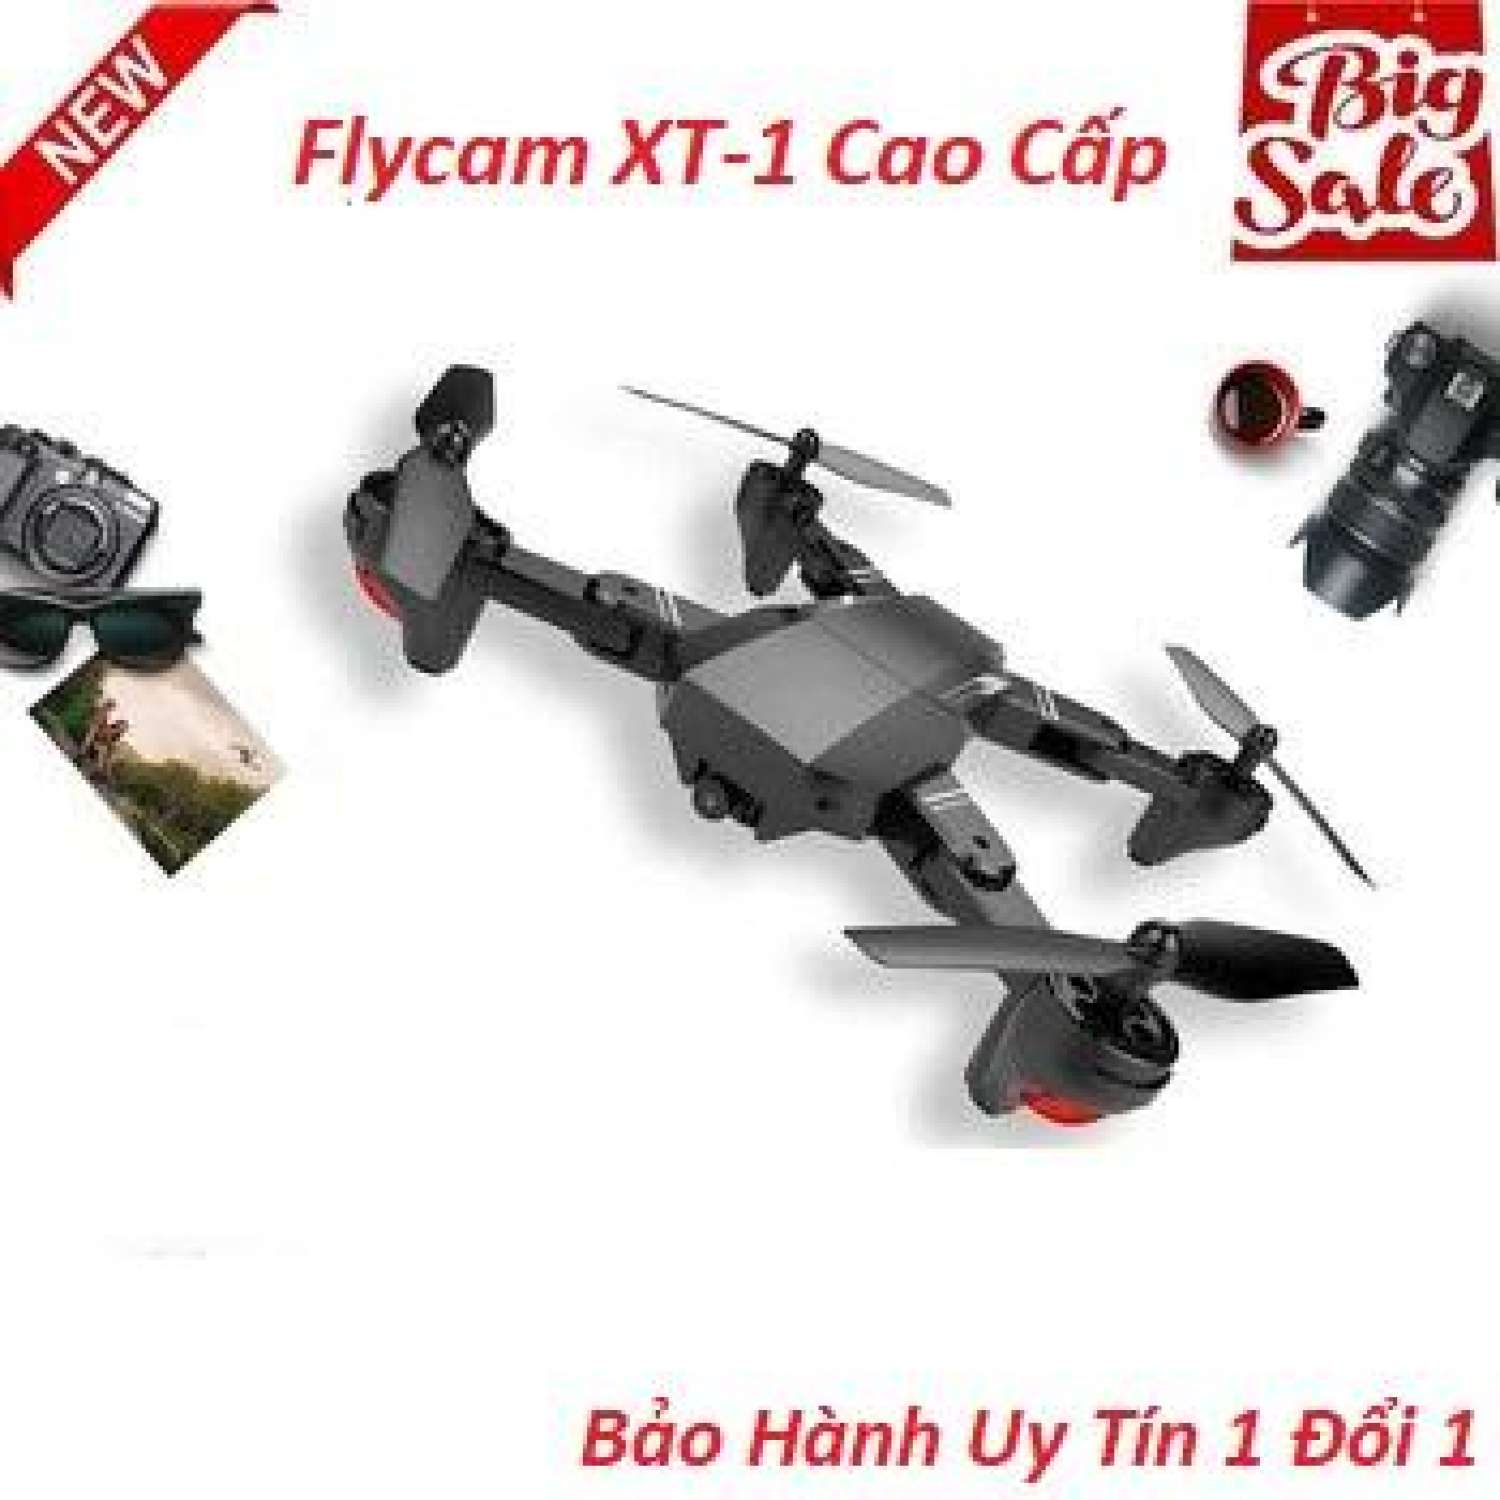 The gioi di dong, Flycam Mini Giá Rẻ , Máy Bay Điều Khiển Từ Xa XT